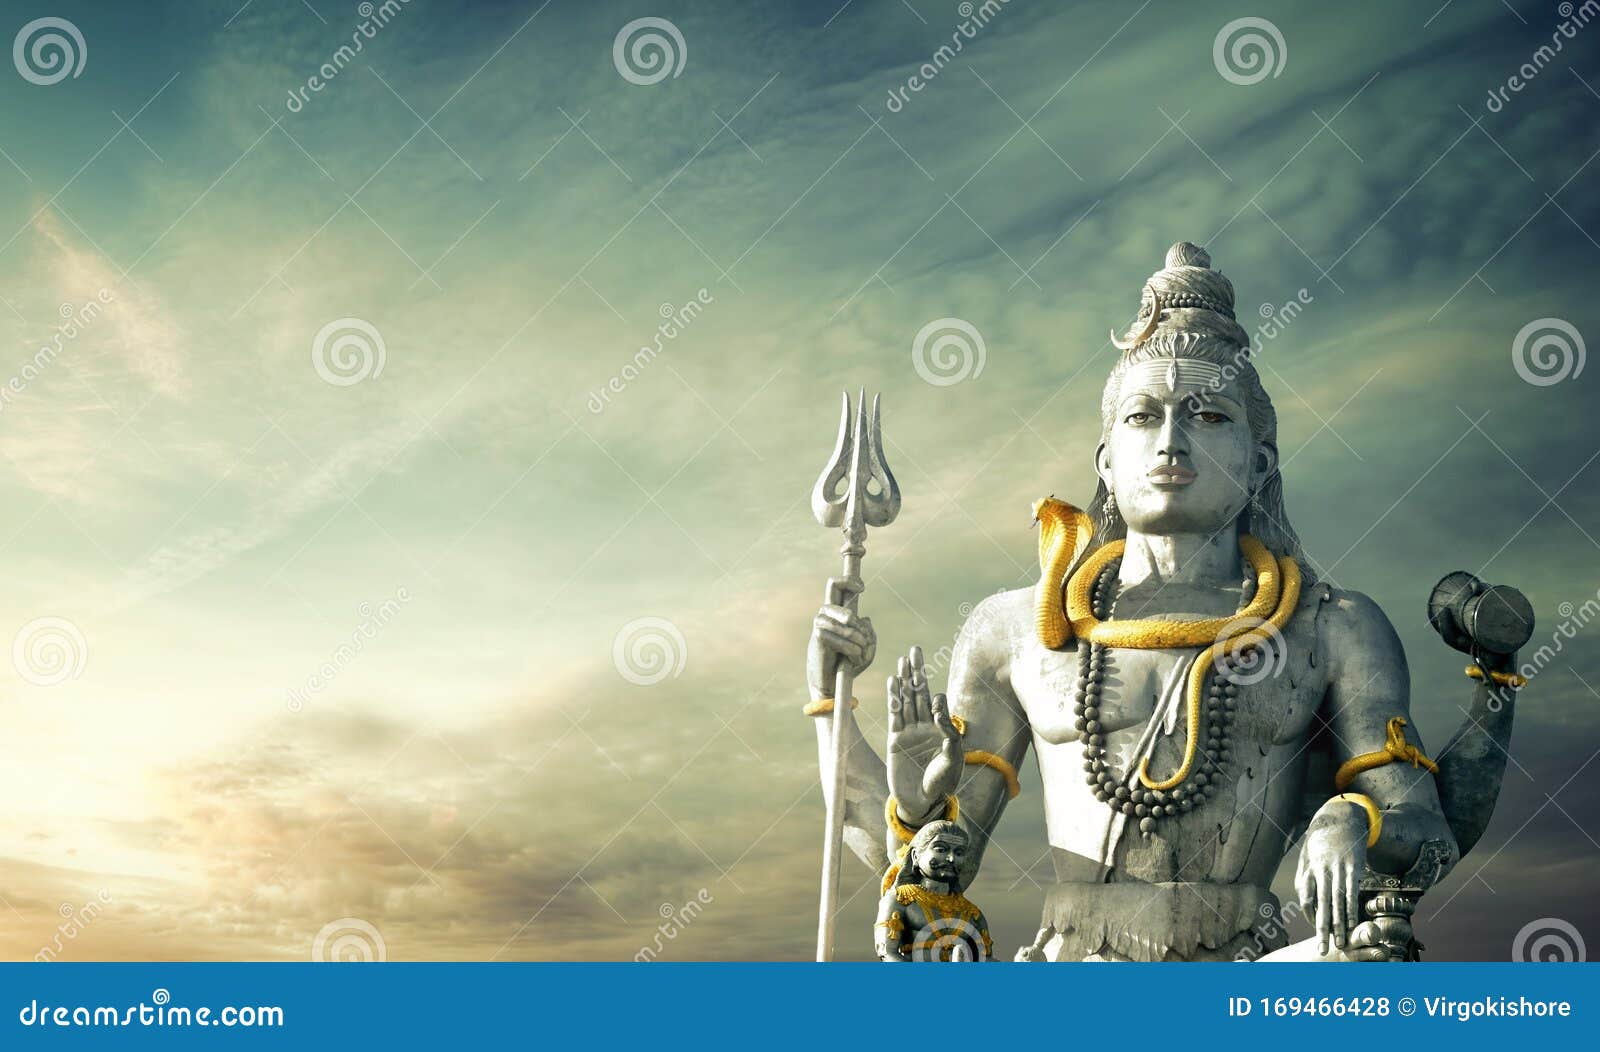 Lord Shiva Statue Murudeshwara Karnataka India Shivaratri Stock Photo -  Image of mythology, sacred: 169466428